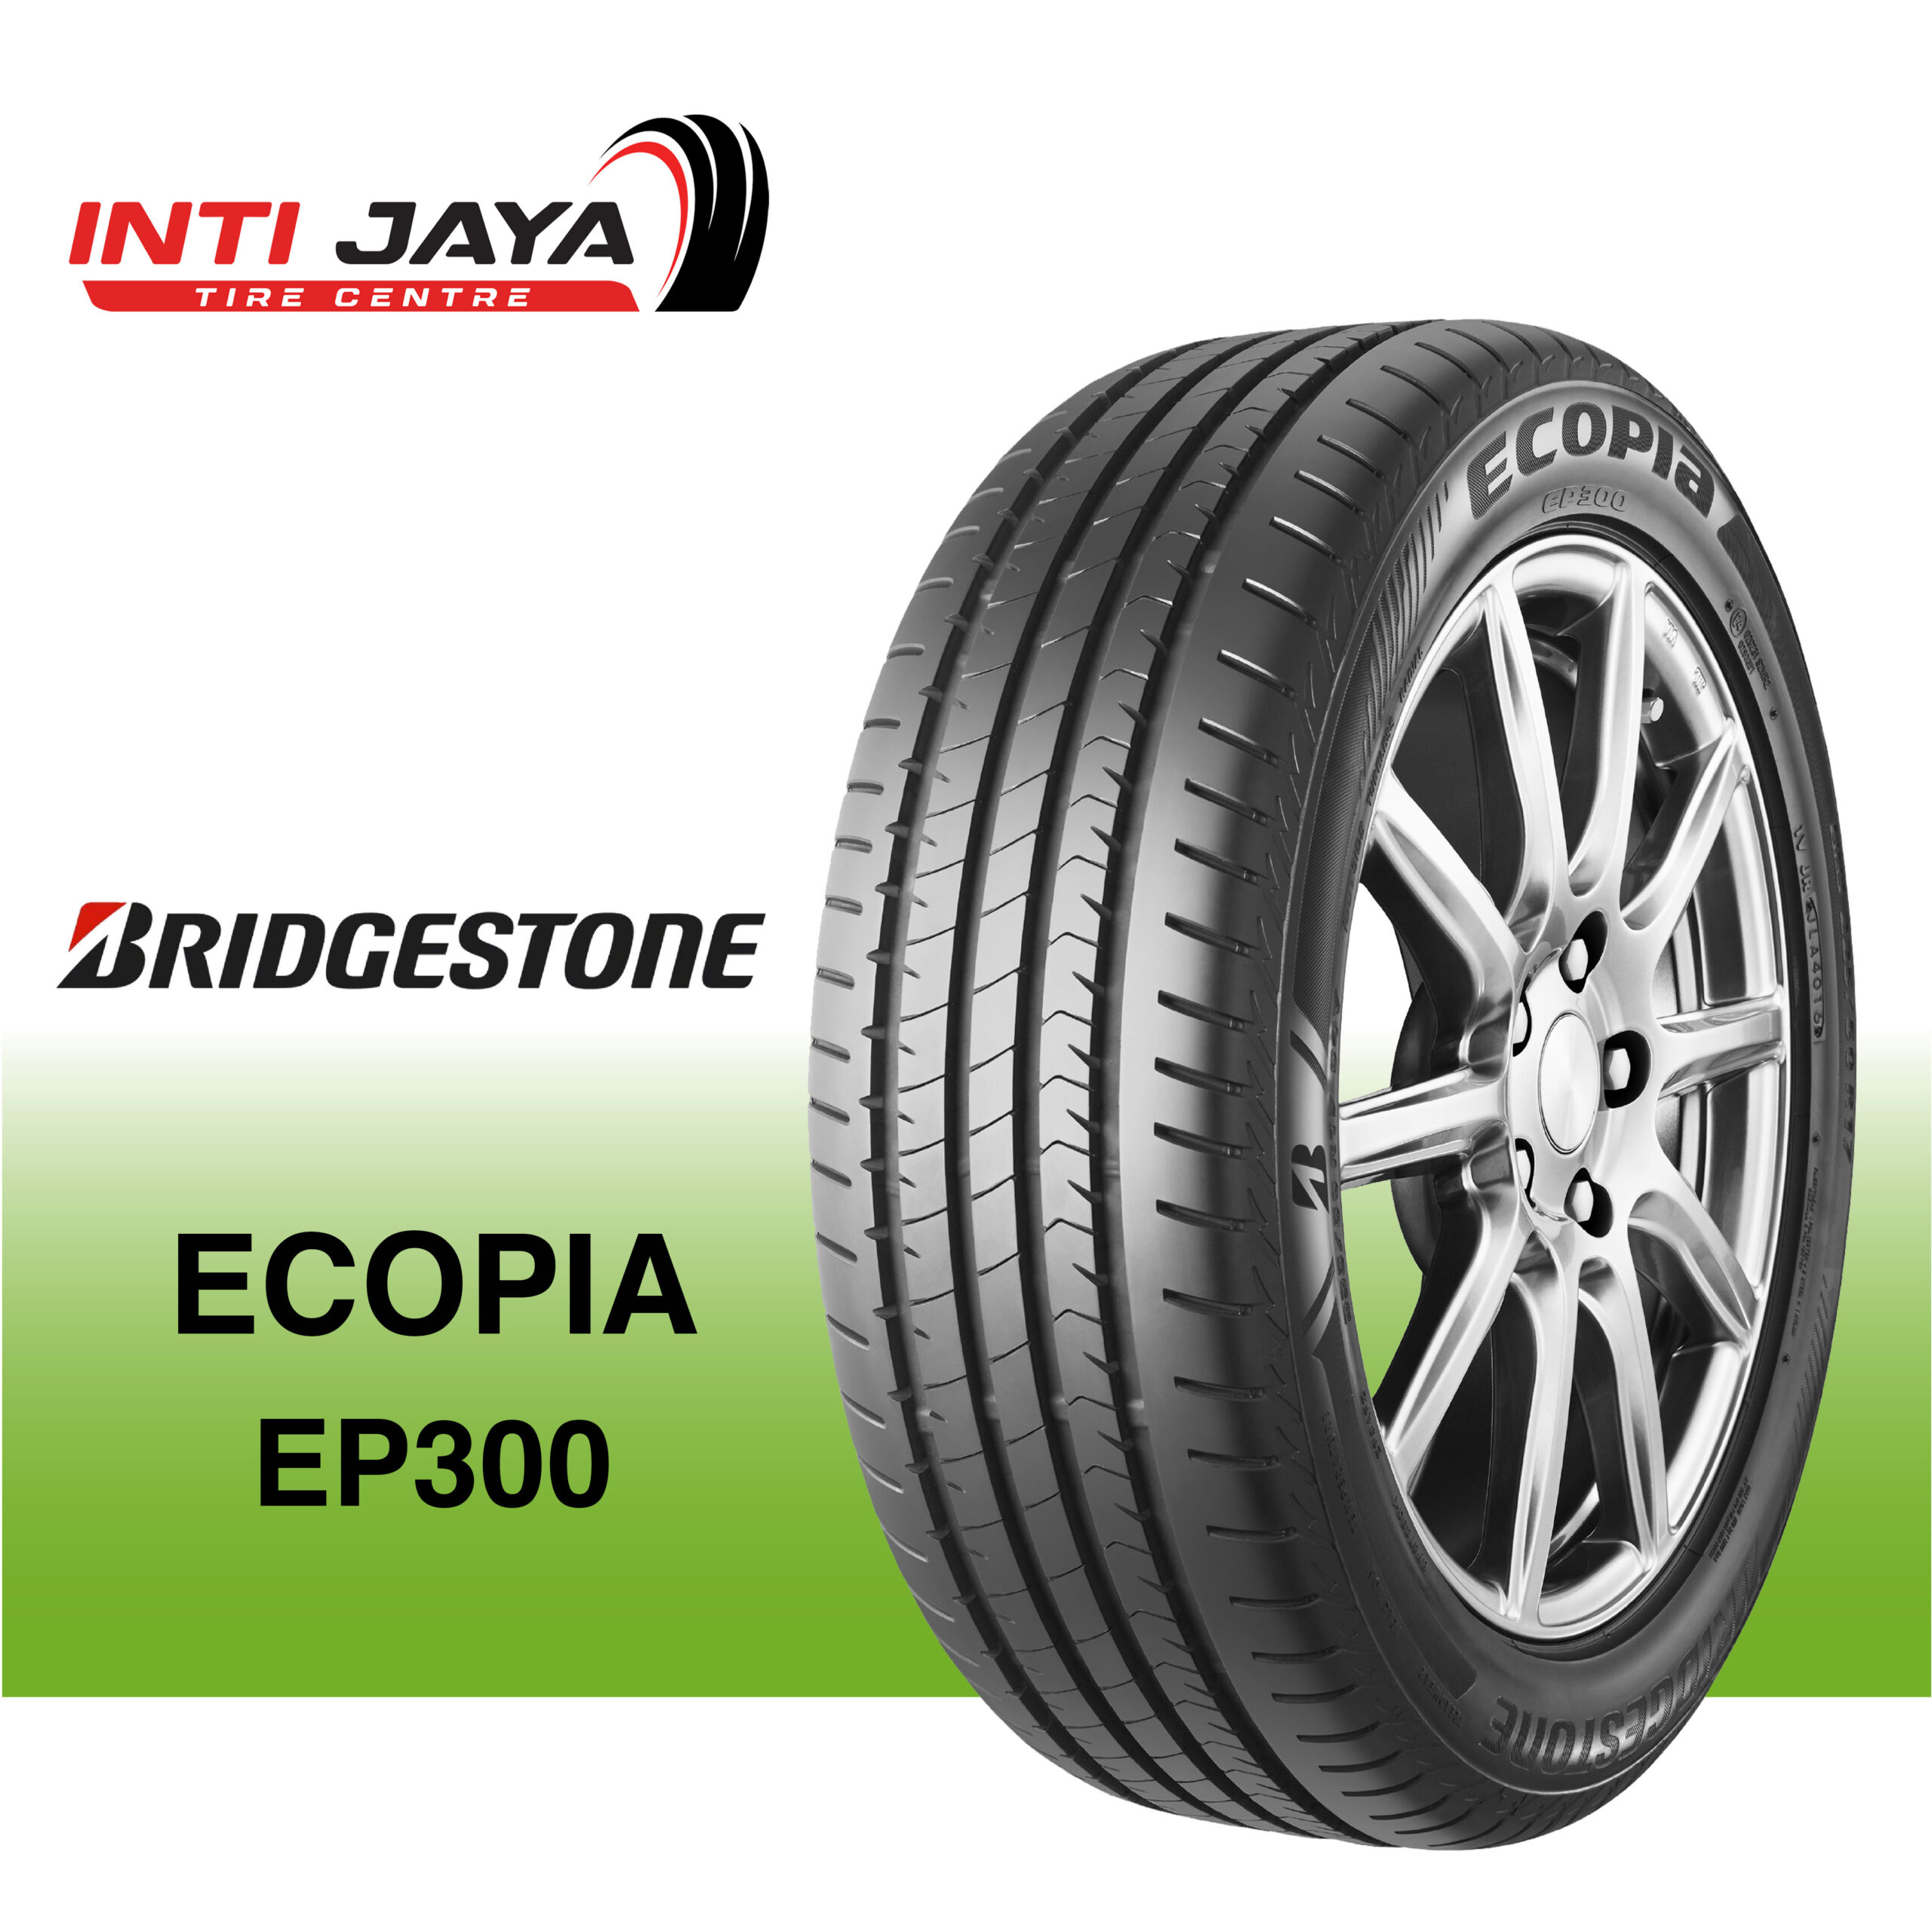 Bridgestone Ecopia EP300